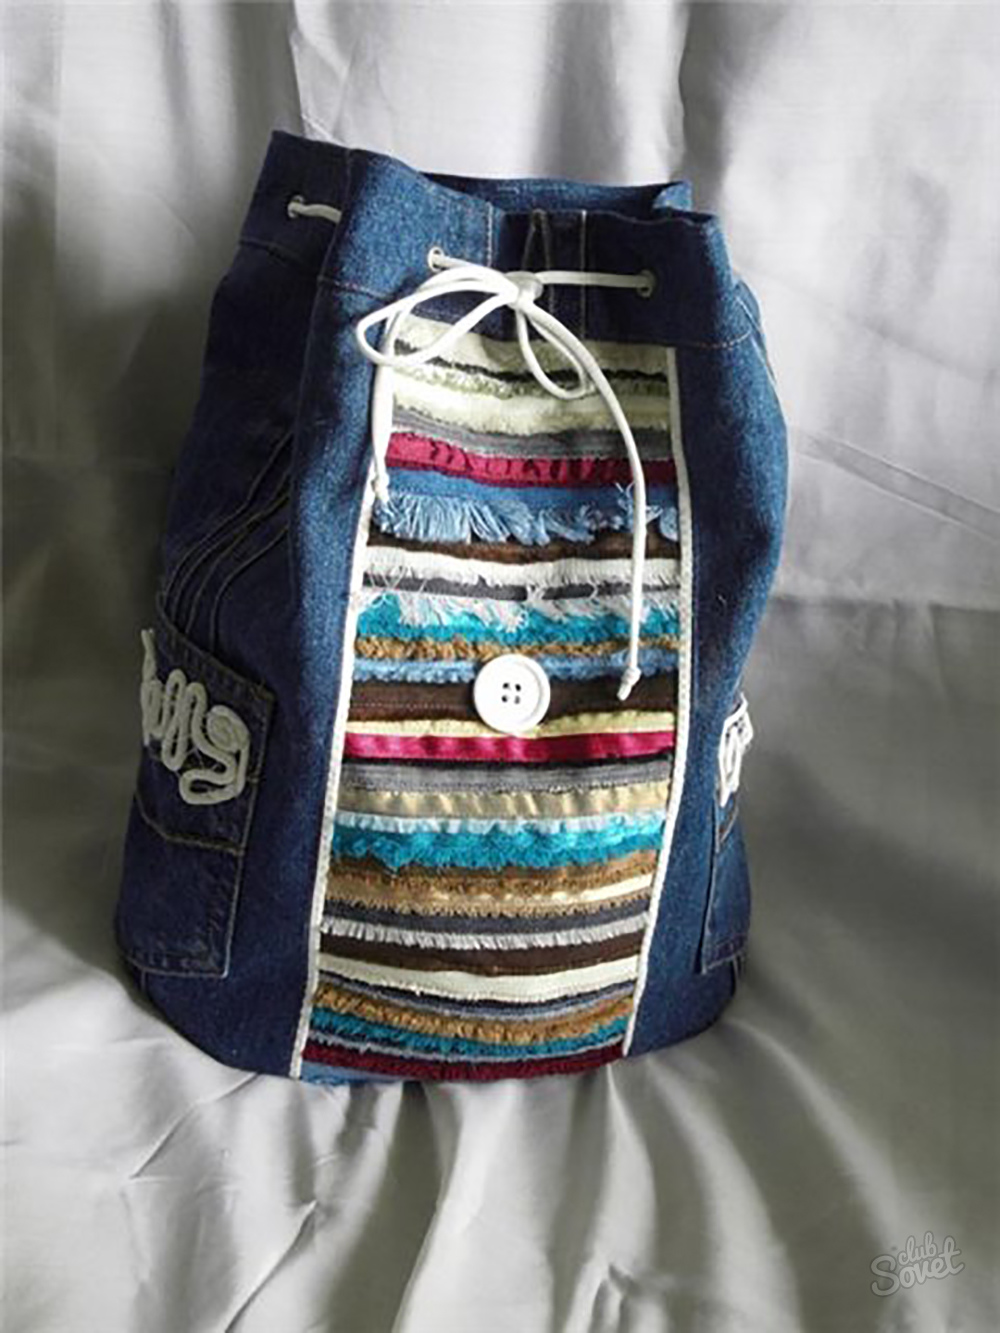 Рюкзак из джинсы